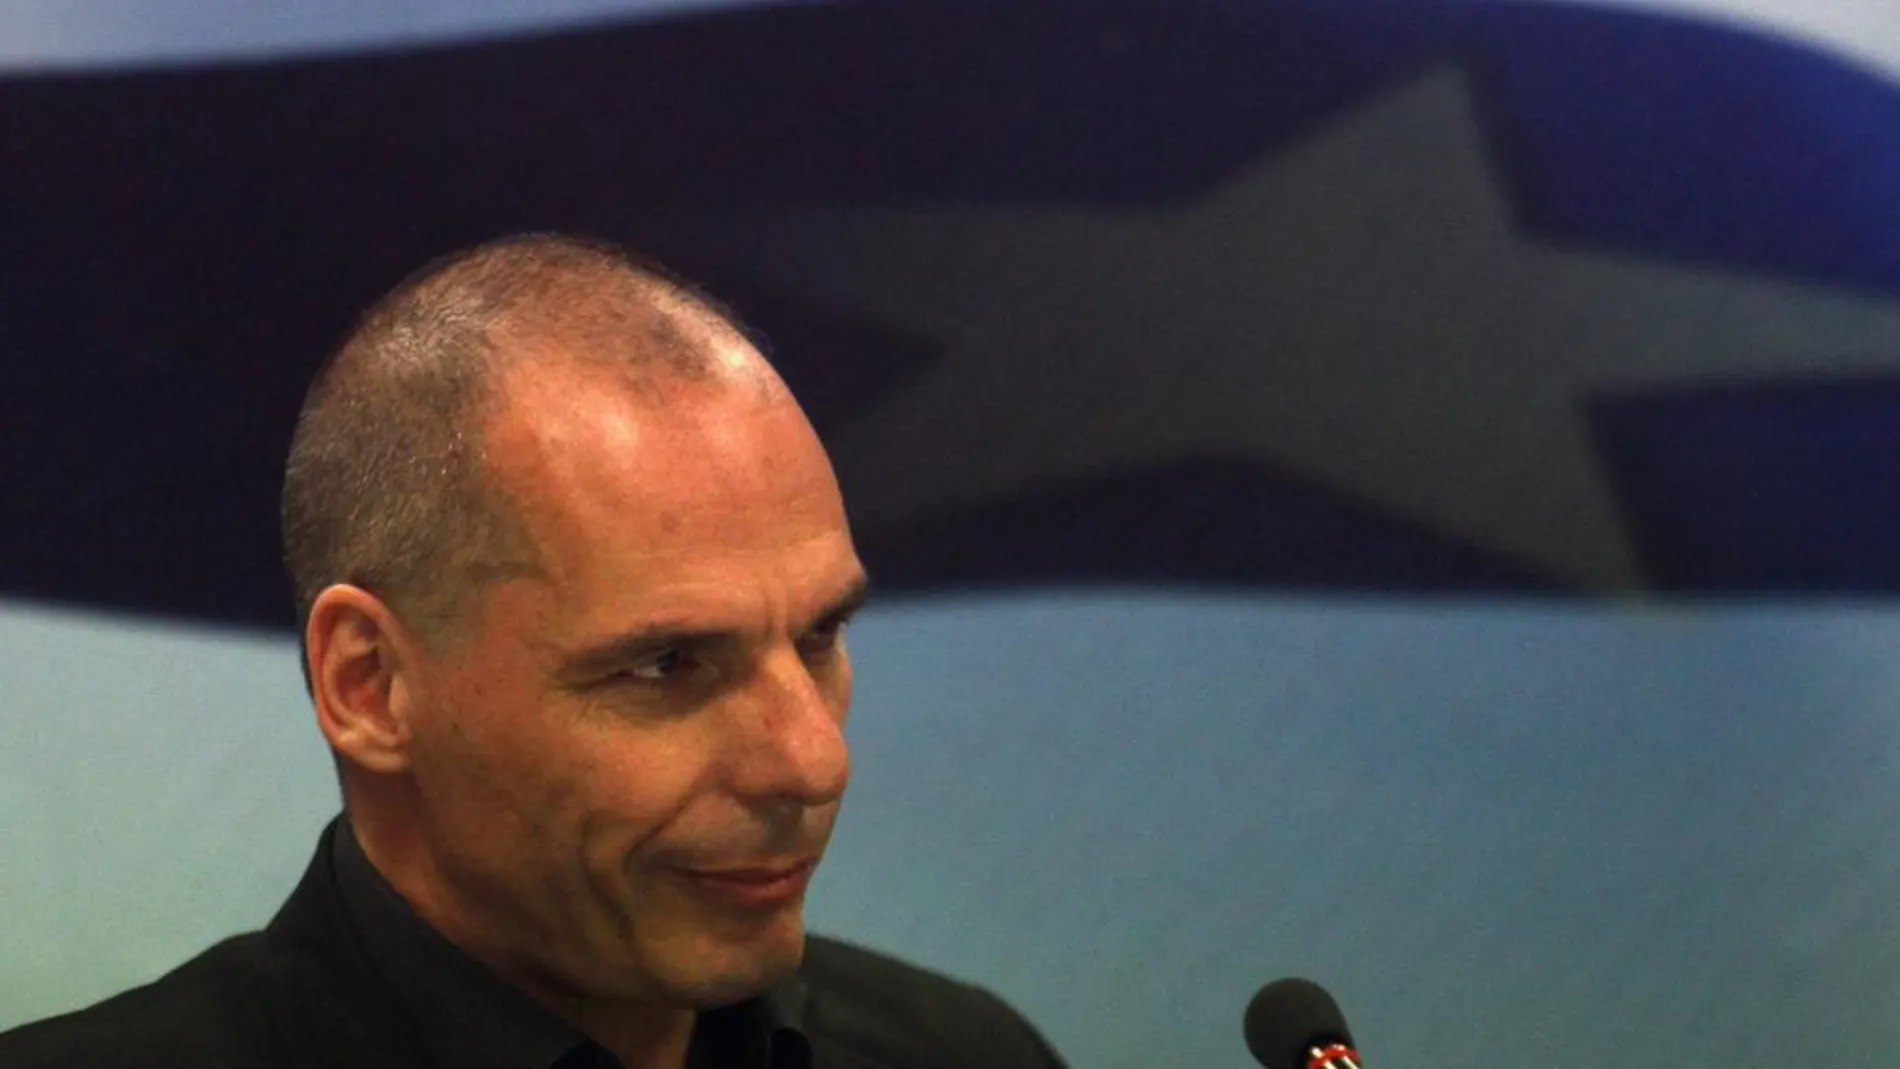 El saliente ministro griego de finanzas Yanis Varoufakis.